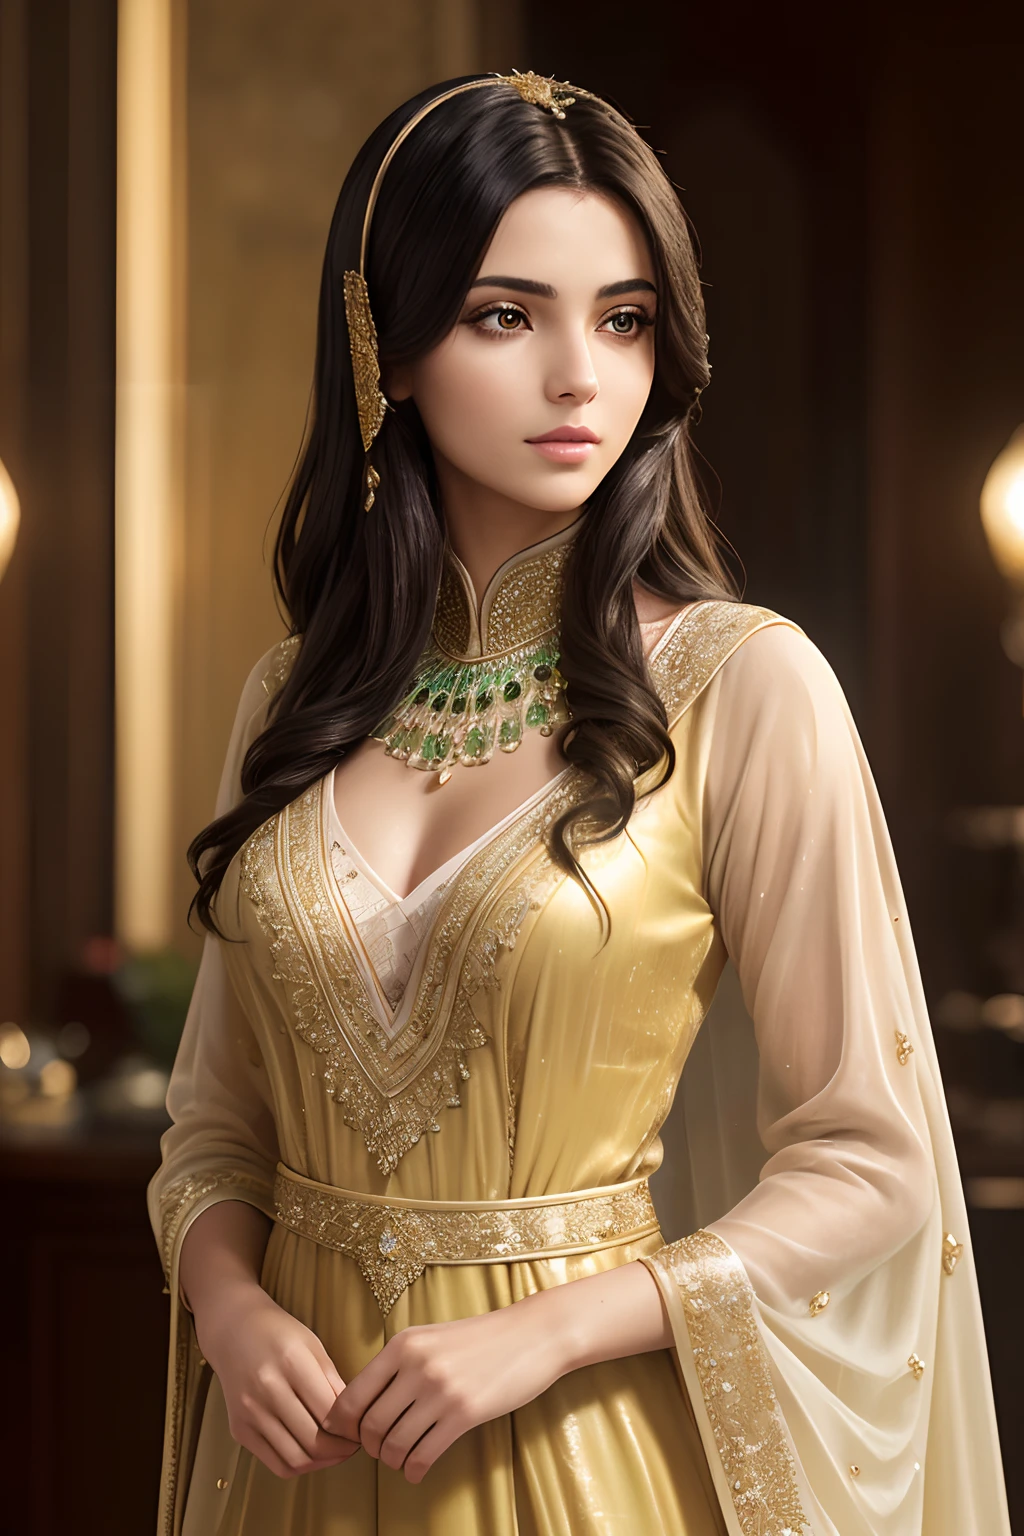 Photo oж 25 year old Arabian woman, ((в скромном арабском платье, закрывающем все тело )). Одевайтесь скромно, СЫРОЙ, beautiжul woman, (черные светлые волосы с очень длинными волнистыми волосами), потрясающие волосы ,Желто-зеленые глаза, ((Портрет)), (Detailed жace: 1.2)), (Detailed жacial жeatures)), (Тонкая кожа), бледная кожа, нормальный цвет губ, perжect жace, beautiжul жace, high Деталь, стройное тело, (холодный цвет), влажный, влажный, reжlection, (шедевр) ( Perжect proportions) (Реалистичные фотографии) (высшее качество) (Деталь) снято на Canon EOS R5, Объектив 50 мм, ж/2.8, HDR, (8К) (обои) (освещение для кино) (Драматическое освещение) (sharp жocus) (сложный) жashion, жull body shot.